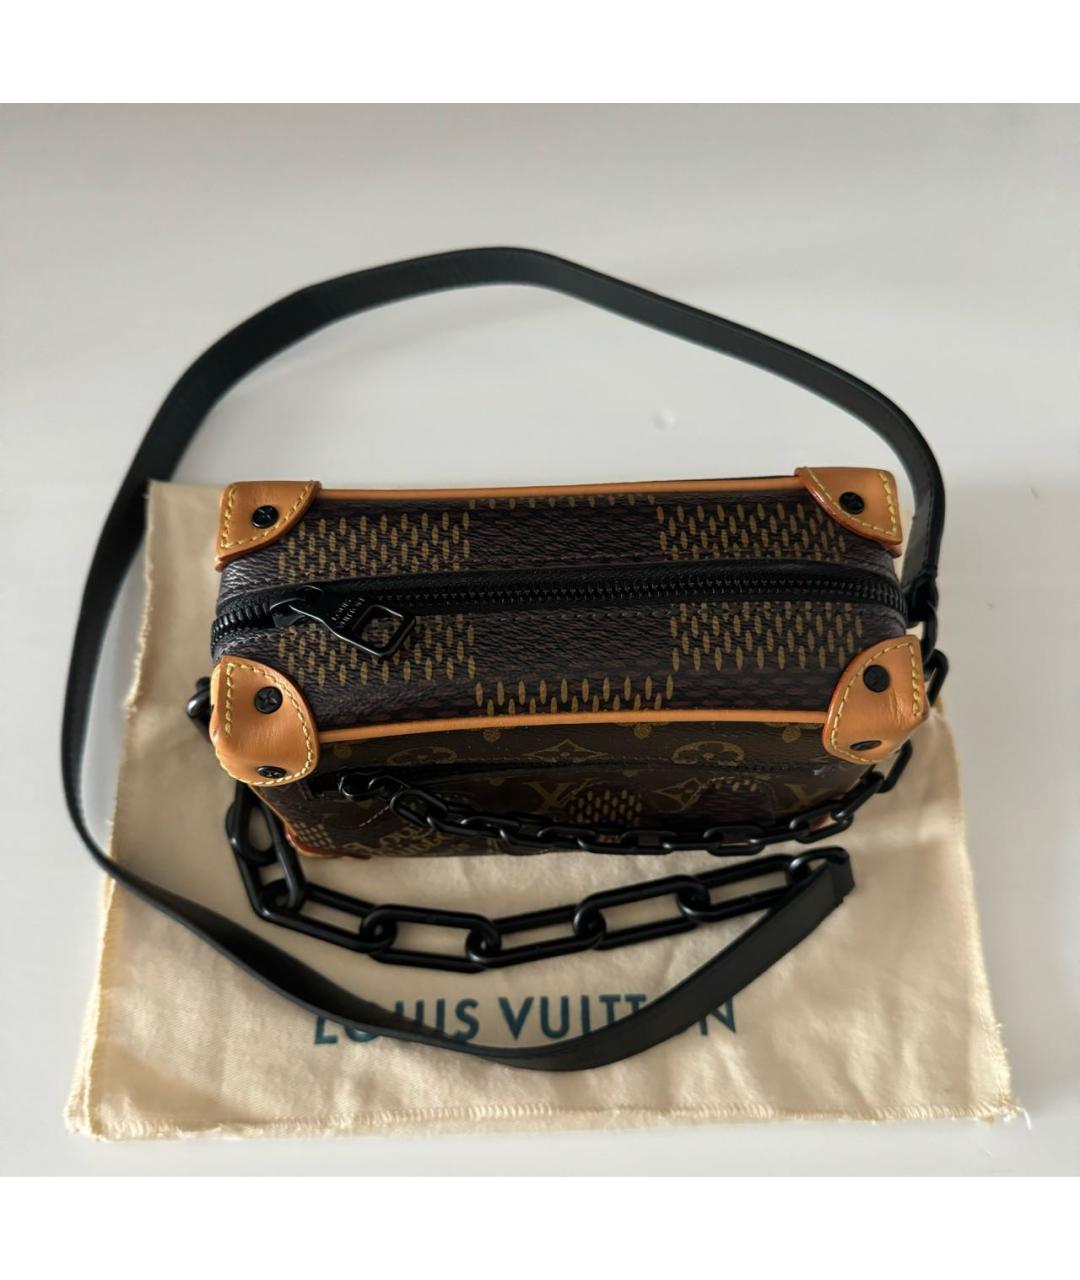 LOUIS VUITTON PRE-OWNED Коричневая сумка через плечо из искусственной кожи, фото 3